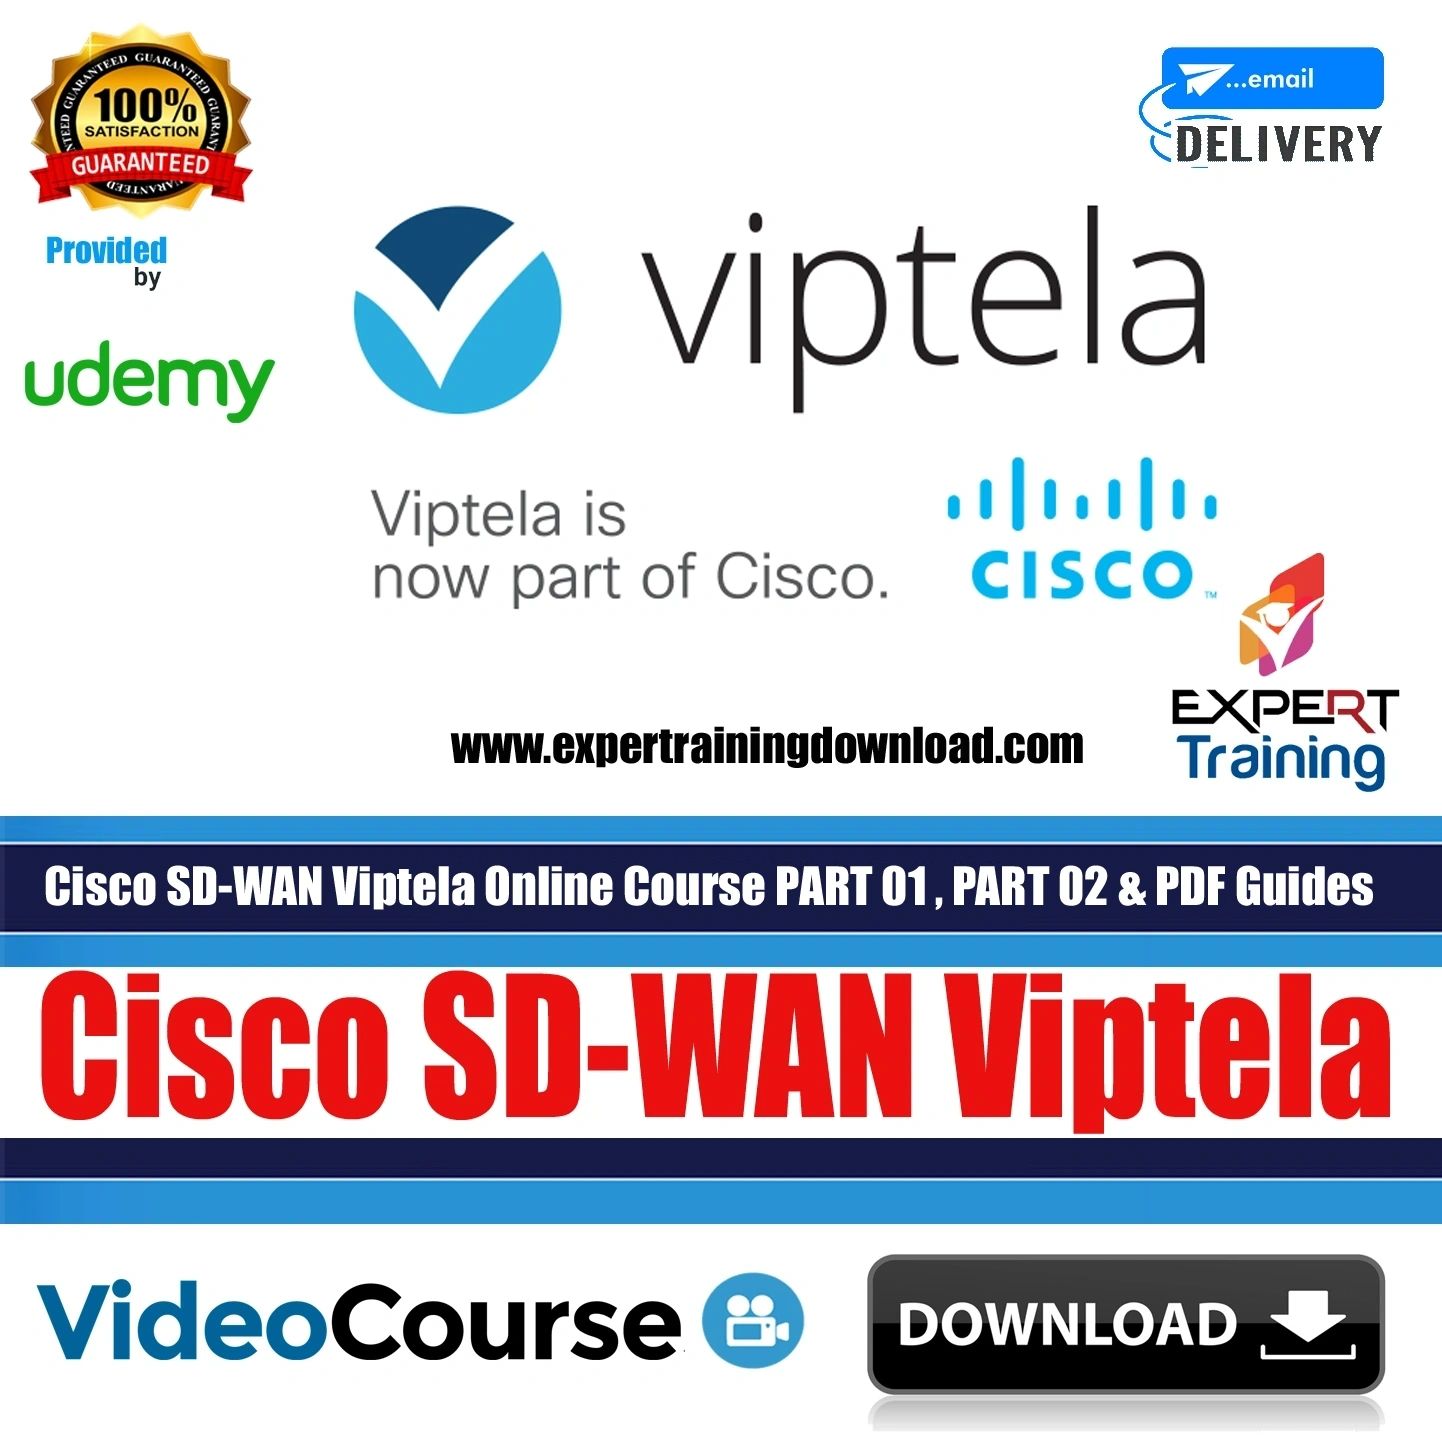 Cisco SD-WAN Viptela Part 1 Part 2 Complete Online Course & PDF Guide